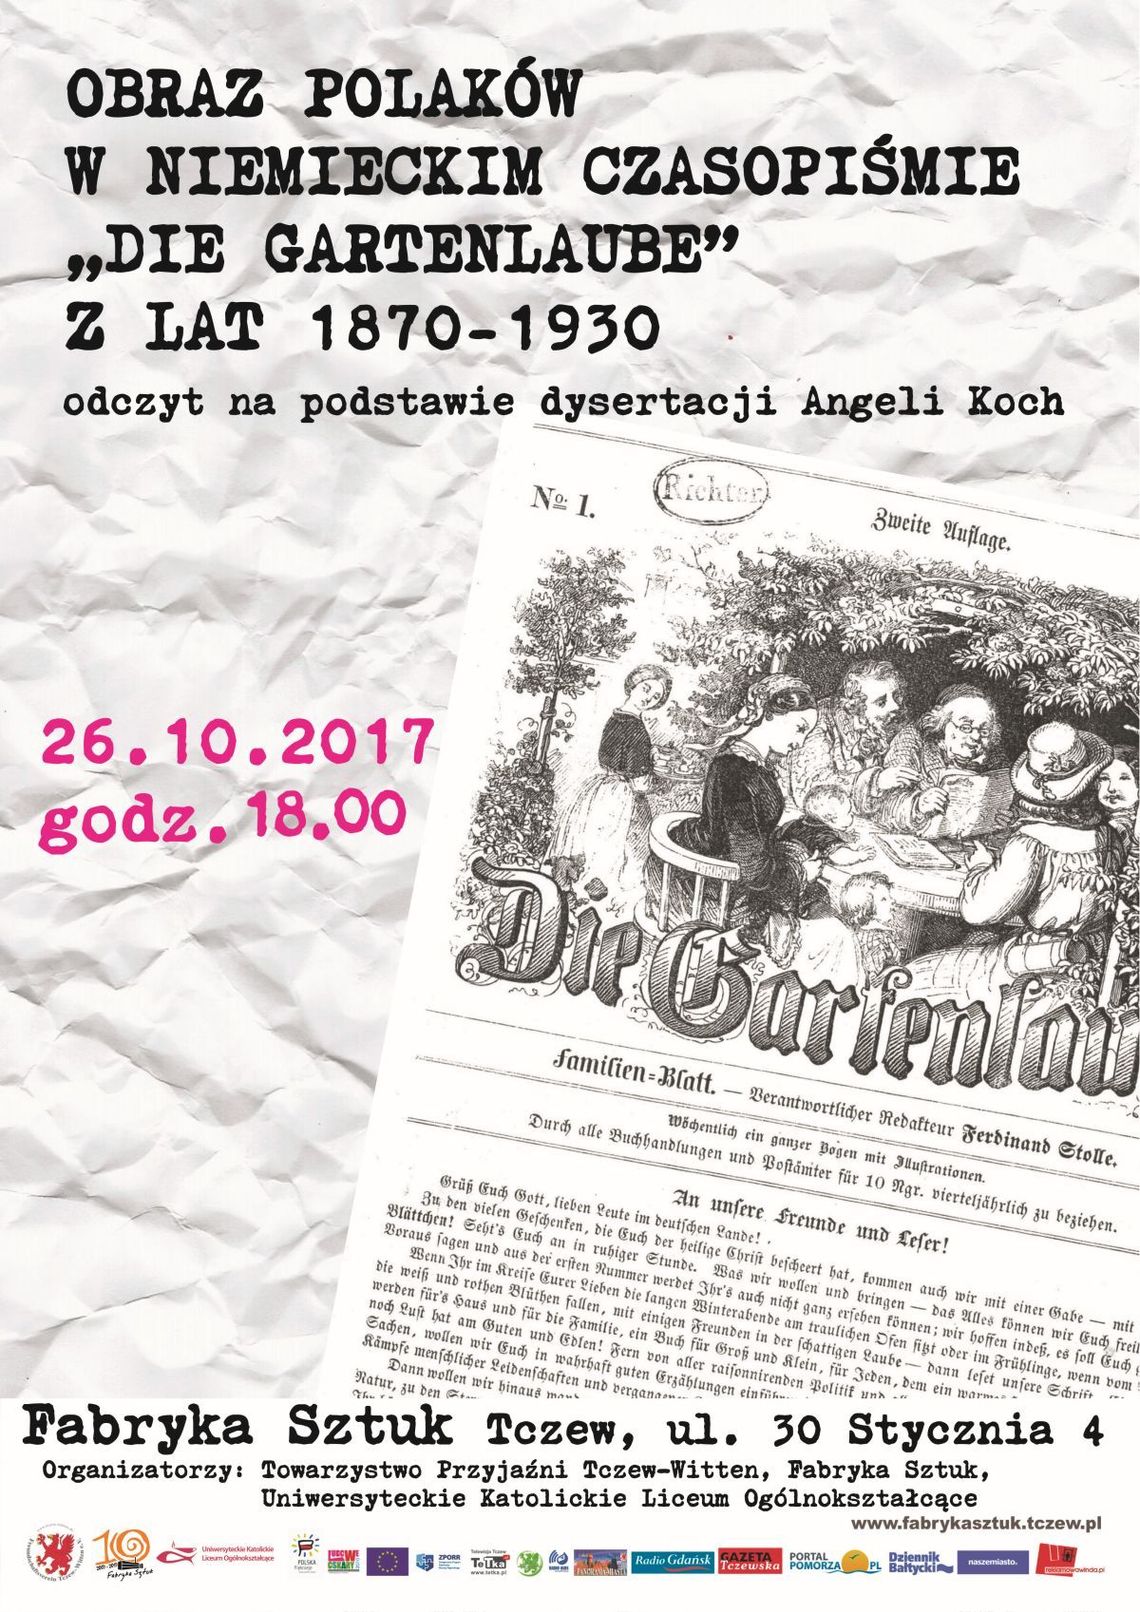 "Obraz Polaków w niemieckim czasopiśmie Die Gartenlaube z lat 1870-1930" - odczyt na podstawie dysertacji Angeli Koch.